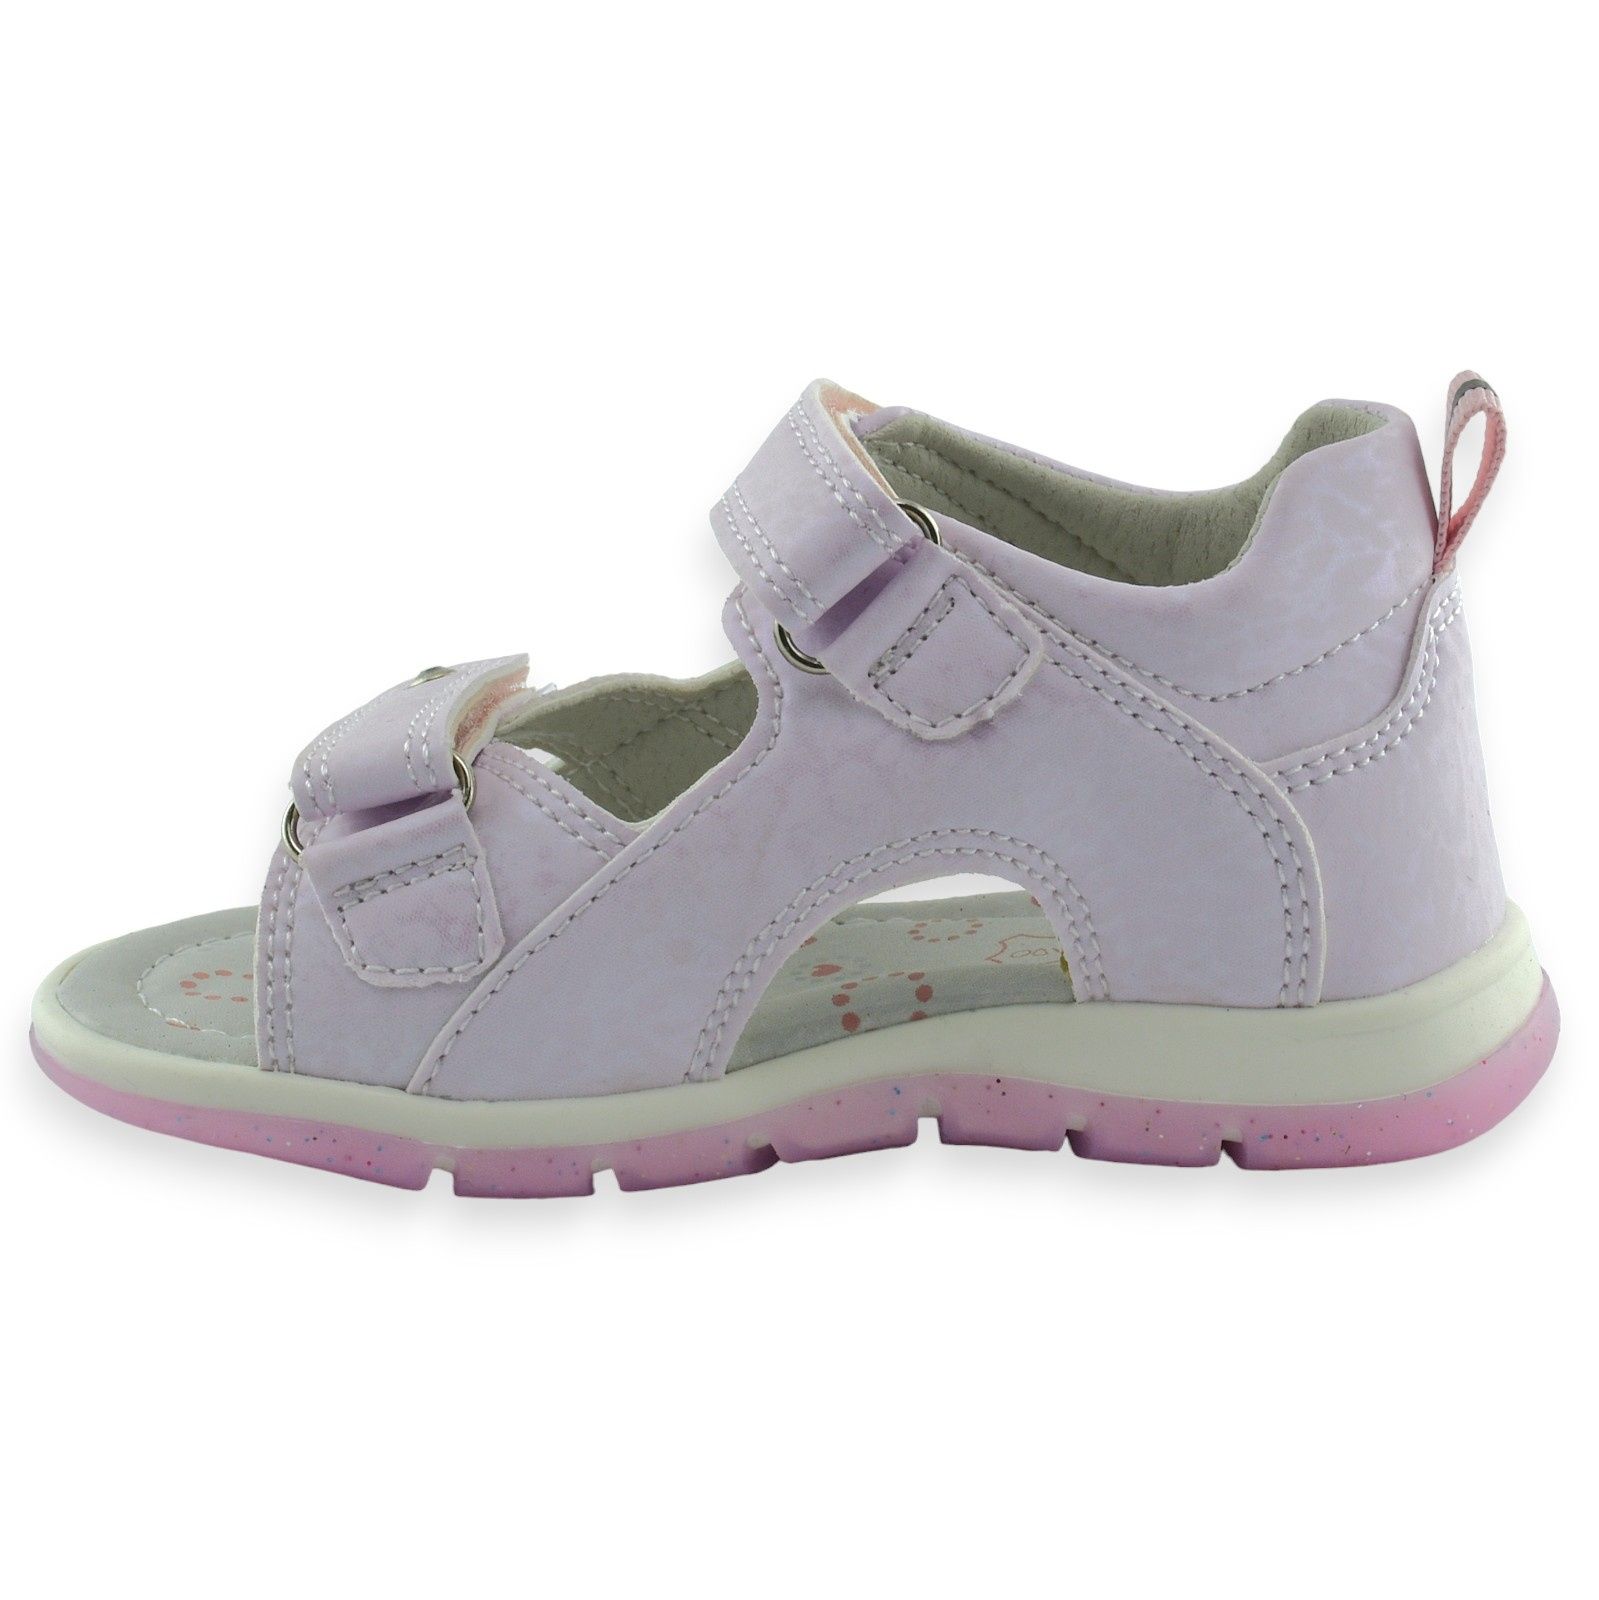 Sandałki dziecięce Befado 170P091 różowe dla dziewczynki rzep |r.20-26